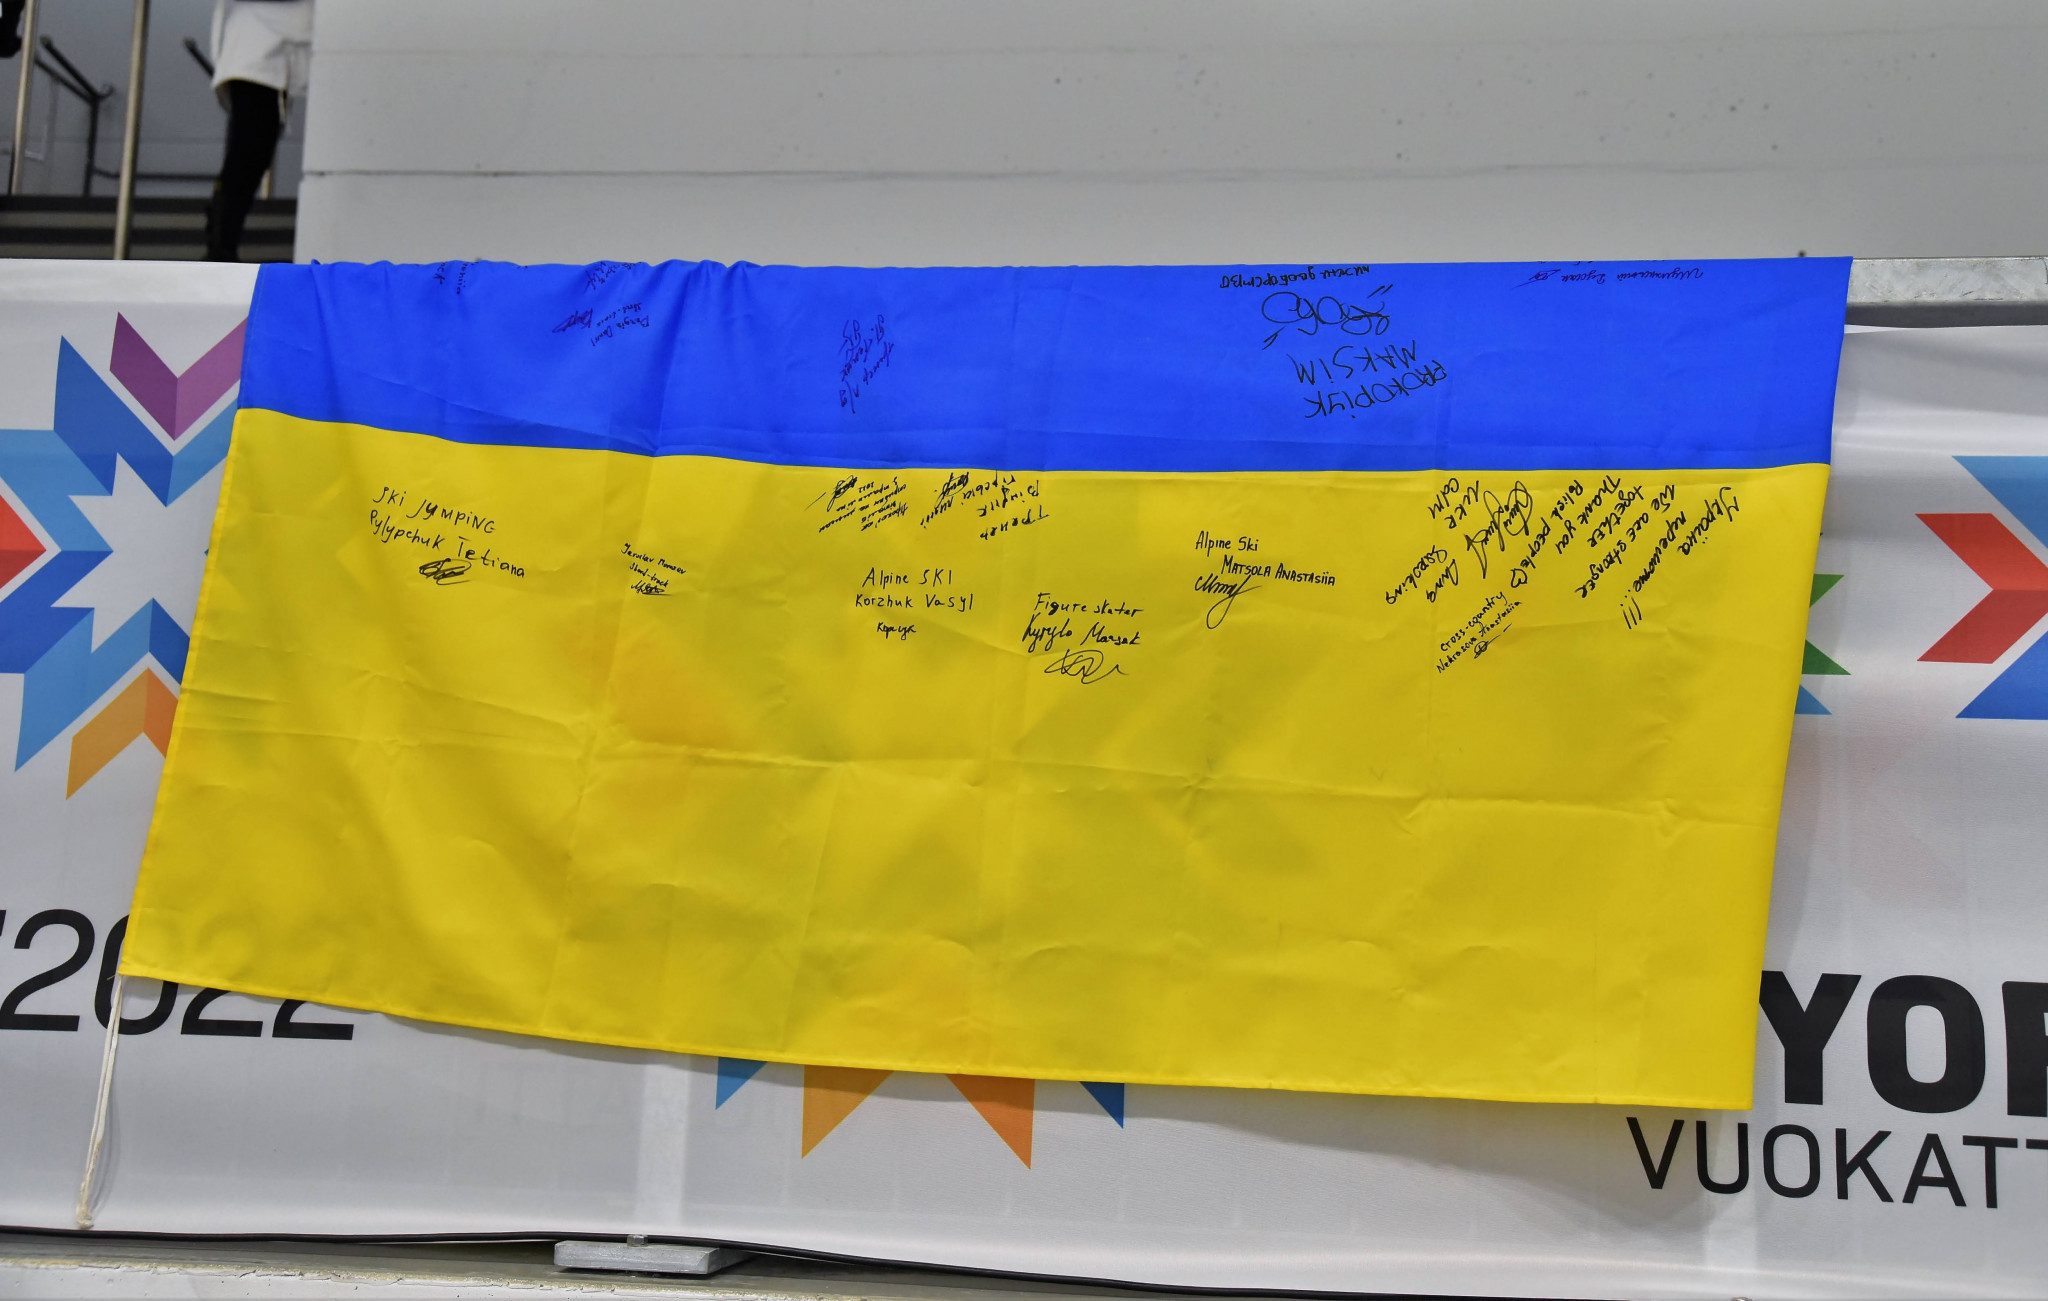 Ukraine's team of 26 athletes has been well received at the Winter EYOF in Vuokatti ©Matti Leinonen/EYOF 2022 Vuokatti